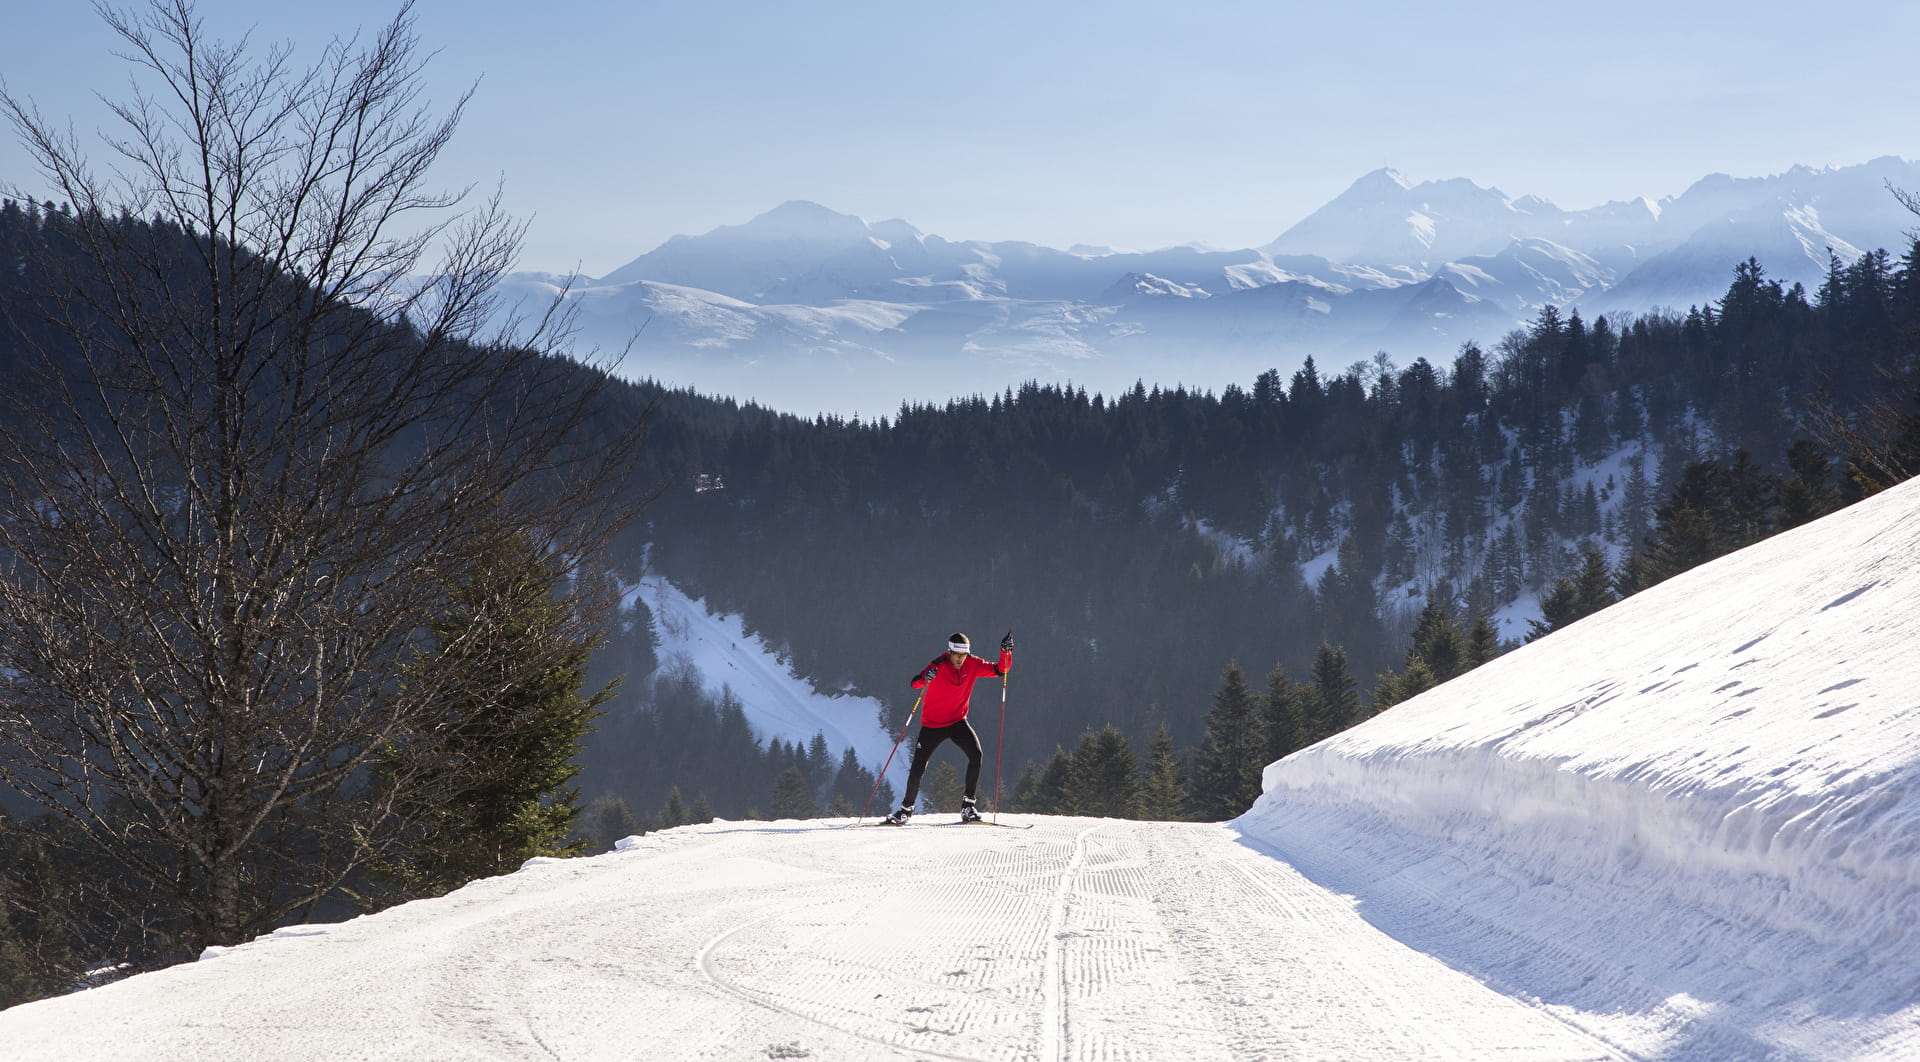 Pista de esquí de fondo en la zona nórdica de Val d'Azun en los Pirineos